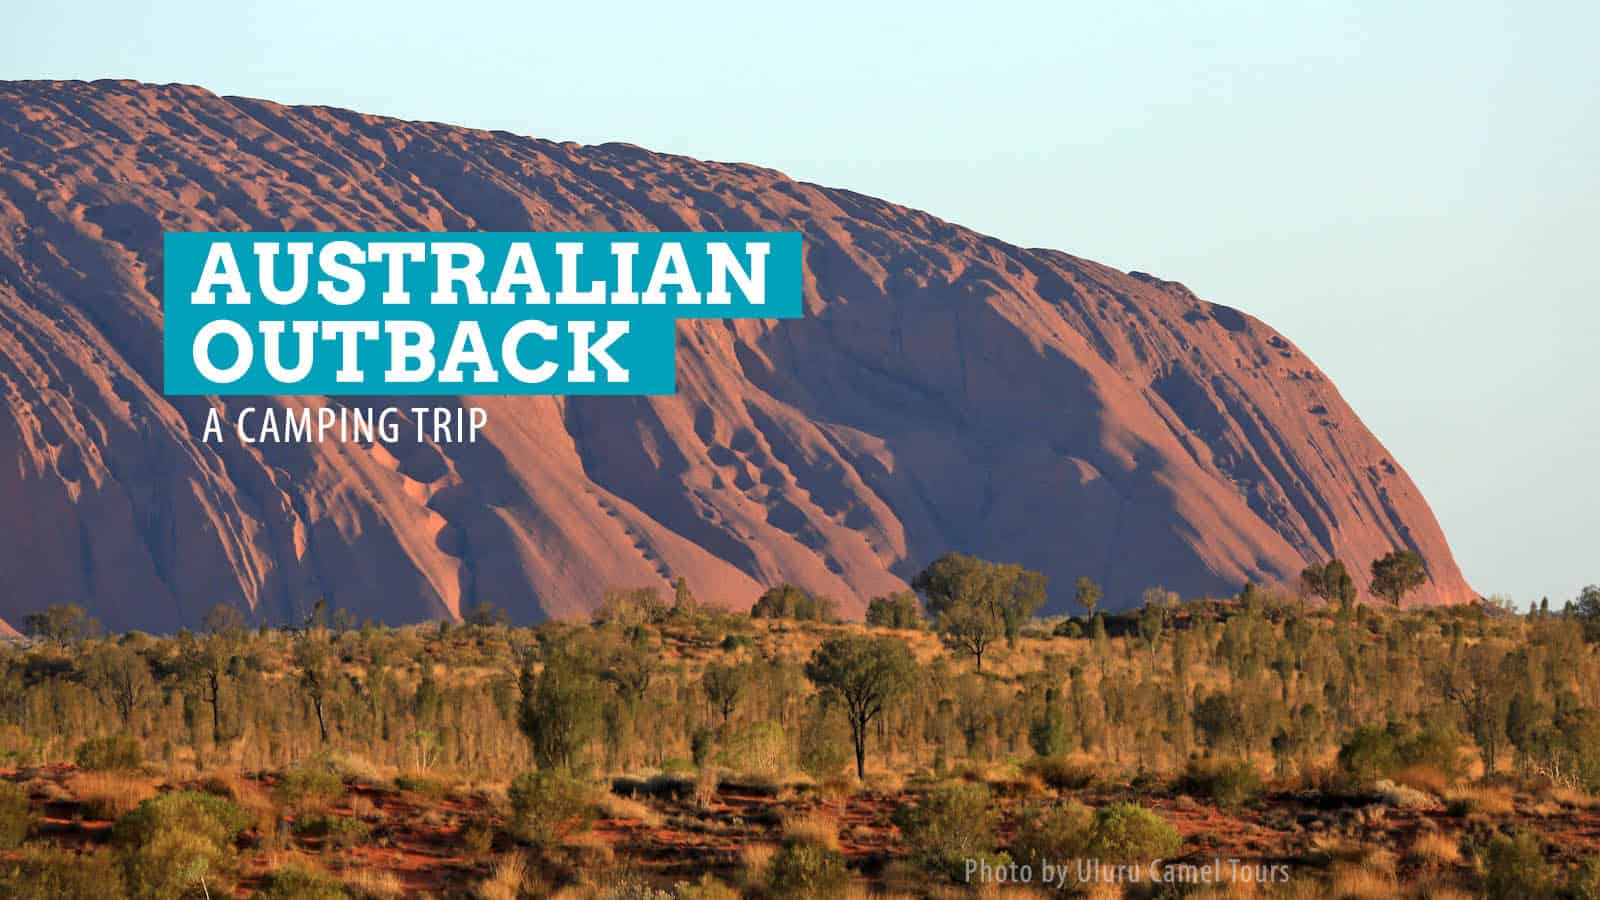 岩石之旅:从爱丽丝泉到澳大利亚乌鲁鲁的露营之旅